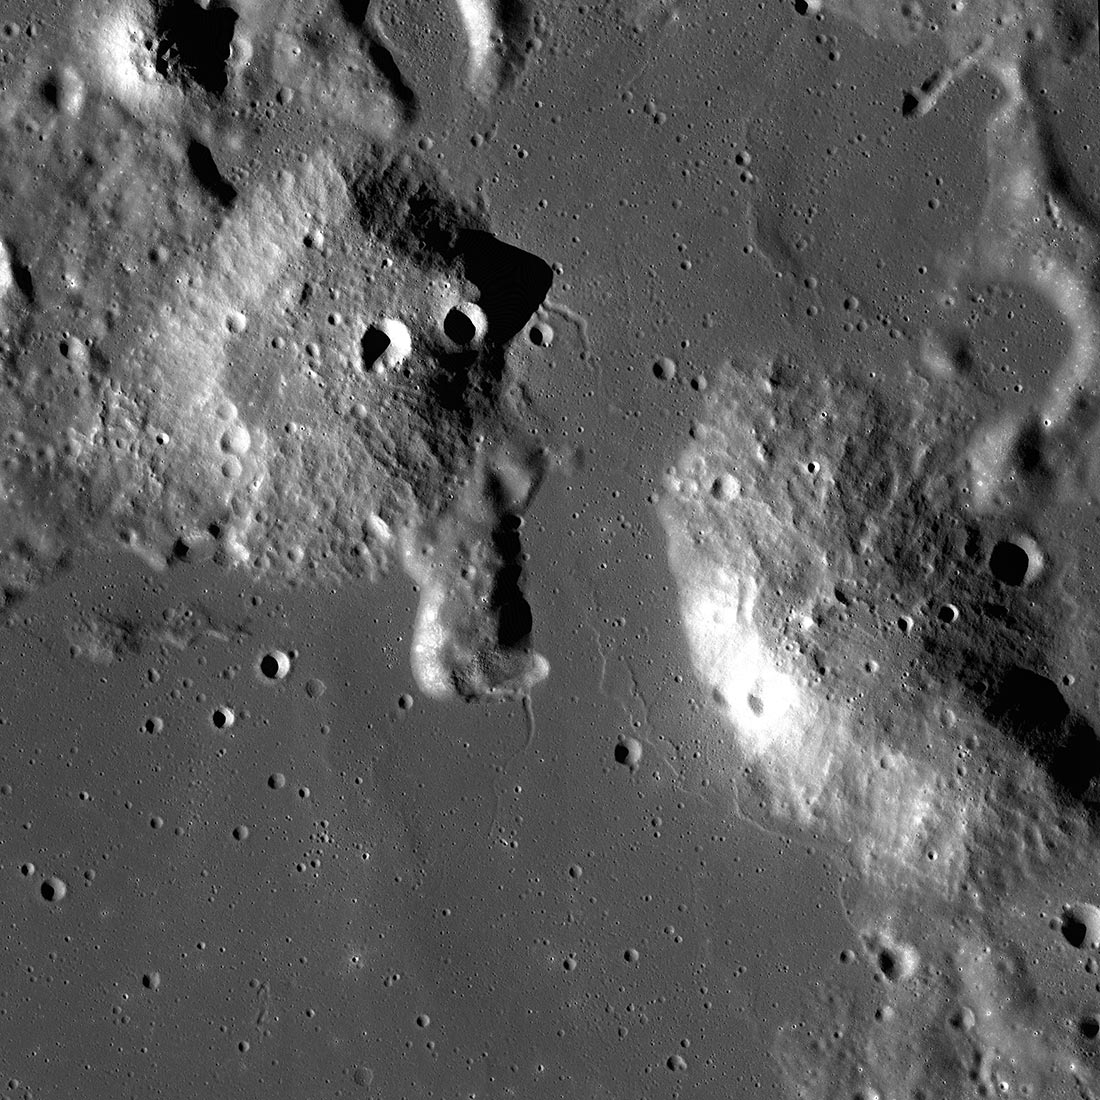 NASA priorytetowo traktuje Artemis Science na Księżycu, aby zbadać tajemnicze kopuły Gruithuisen